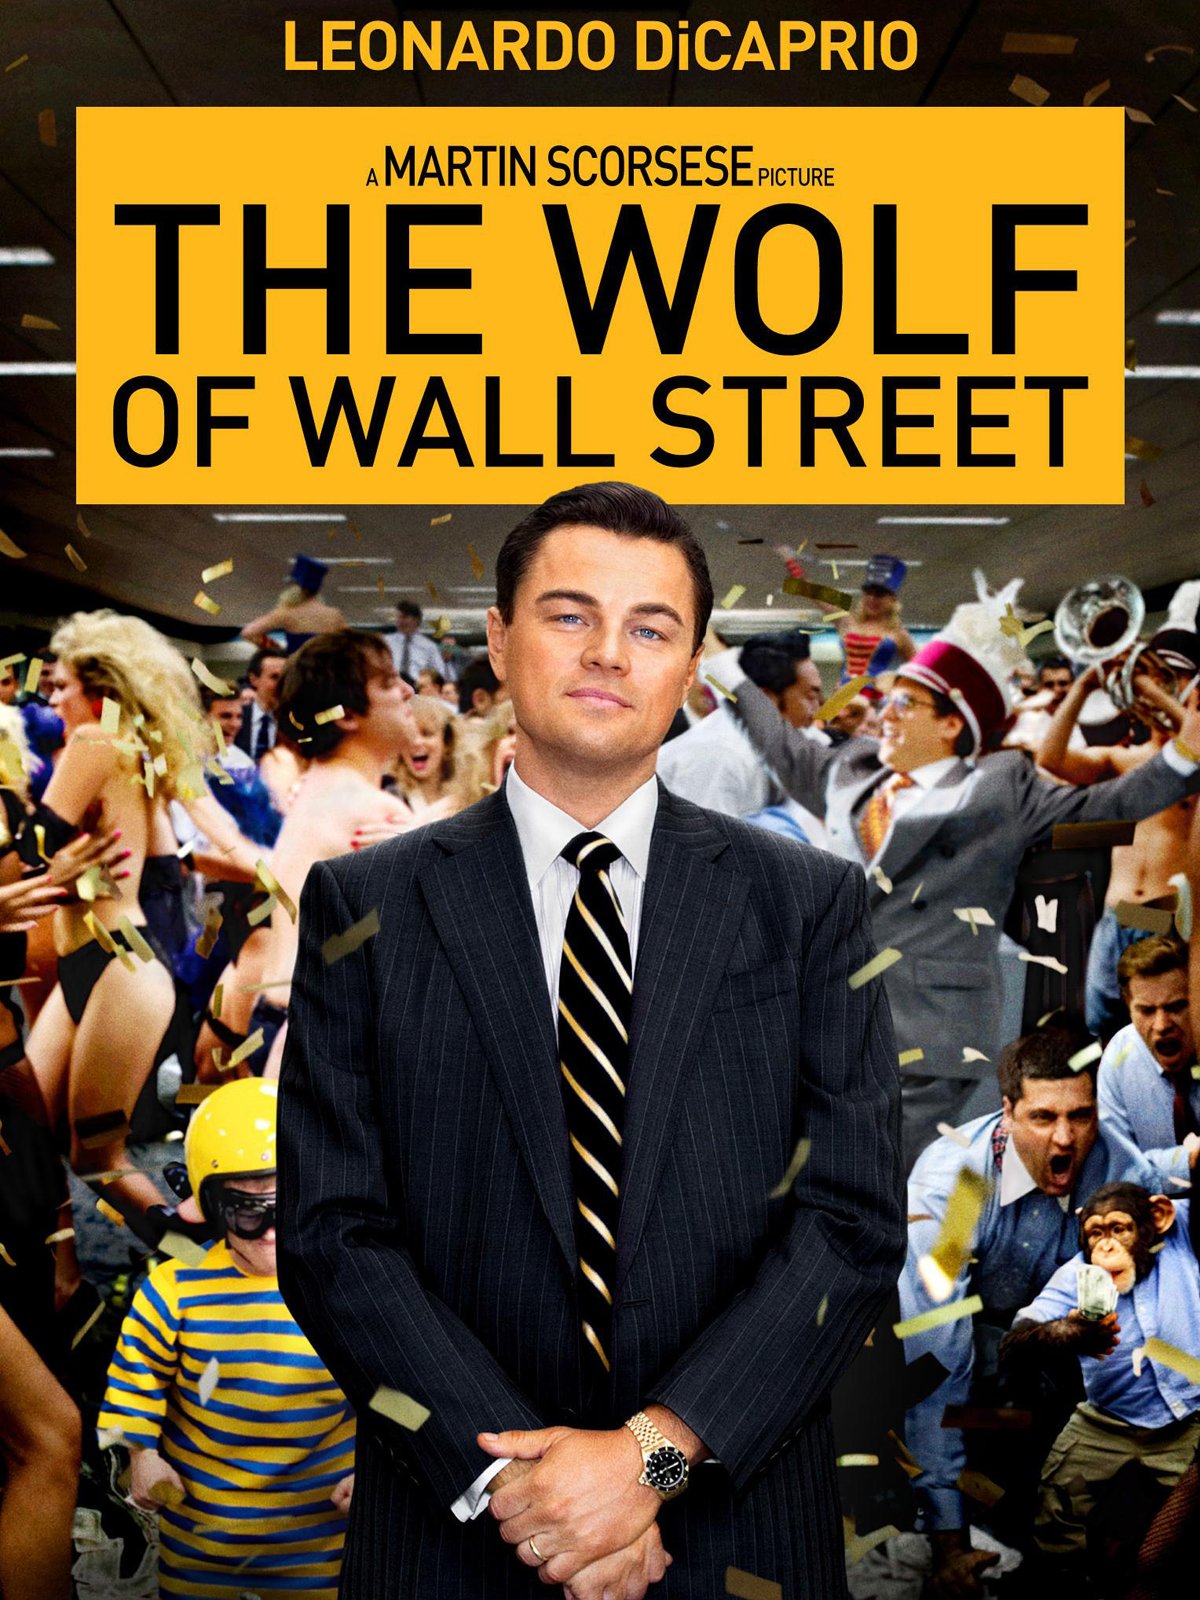 Wolf of Wall Street Leonardo DiCaprio Margot Robbie